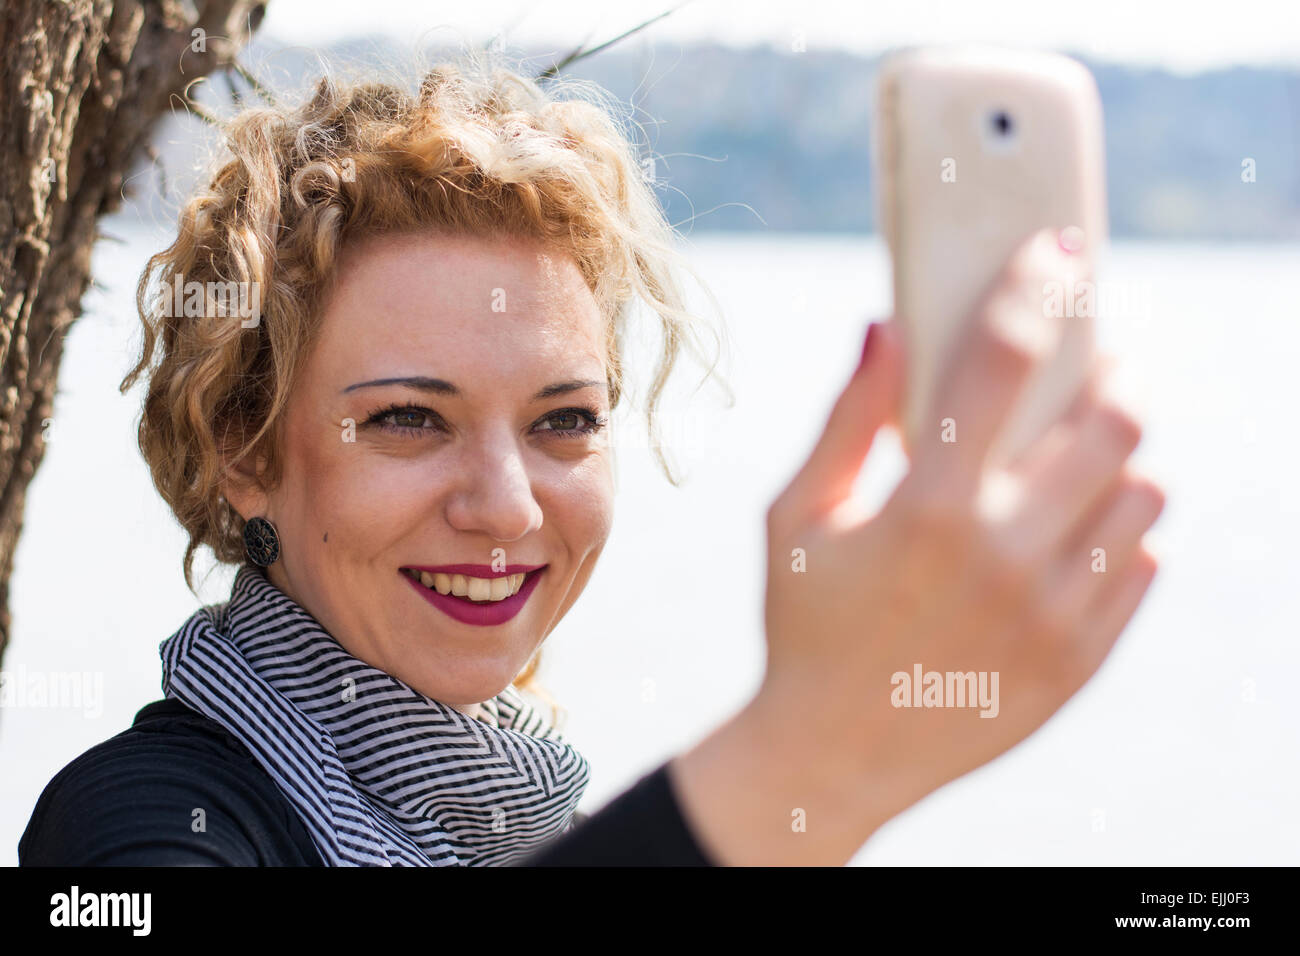 Hübsche junge Frau mit blonden lockigen Haaren nehmen Selfie mit dem Telefon in Natur. Sie lächelt wie sie mit er kommuniziert Stockfoto